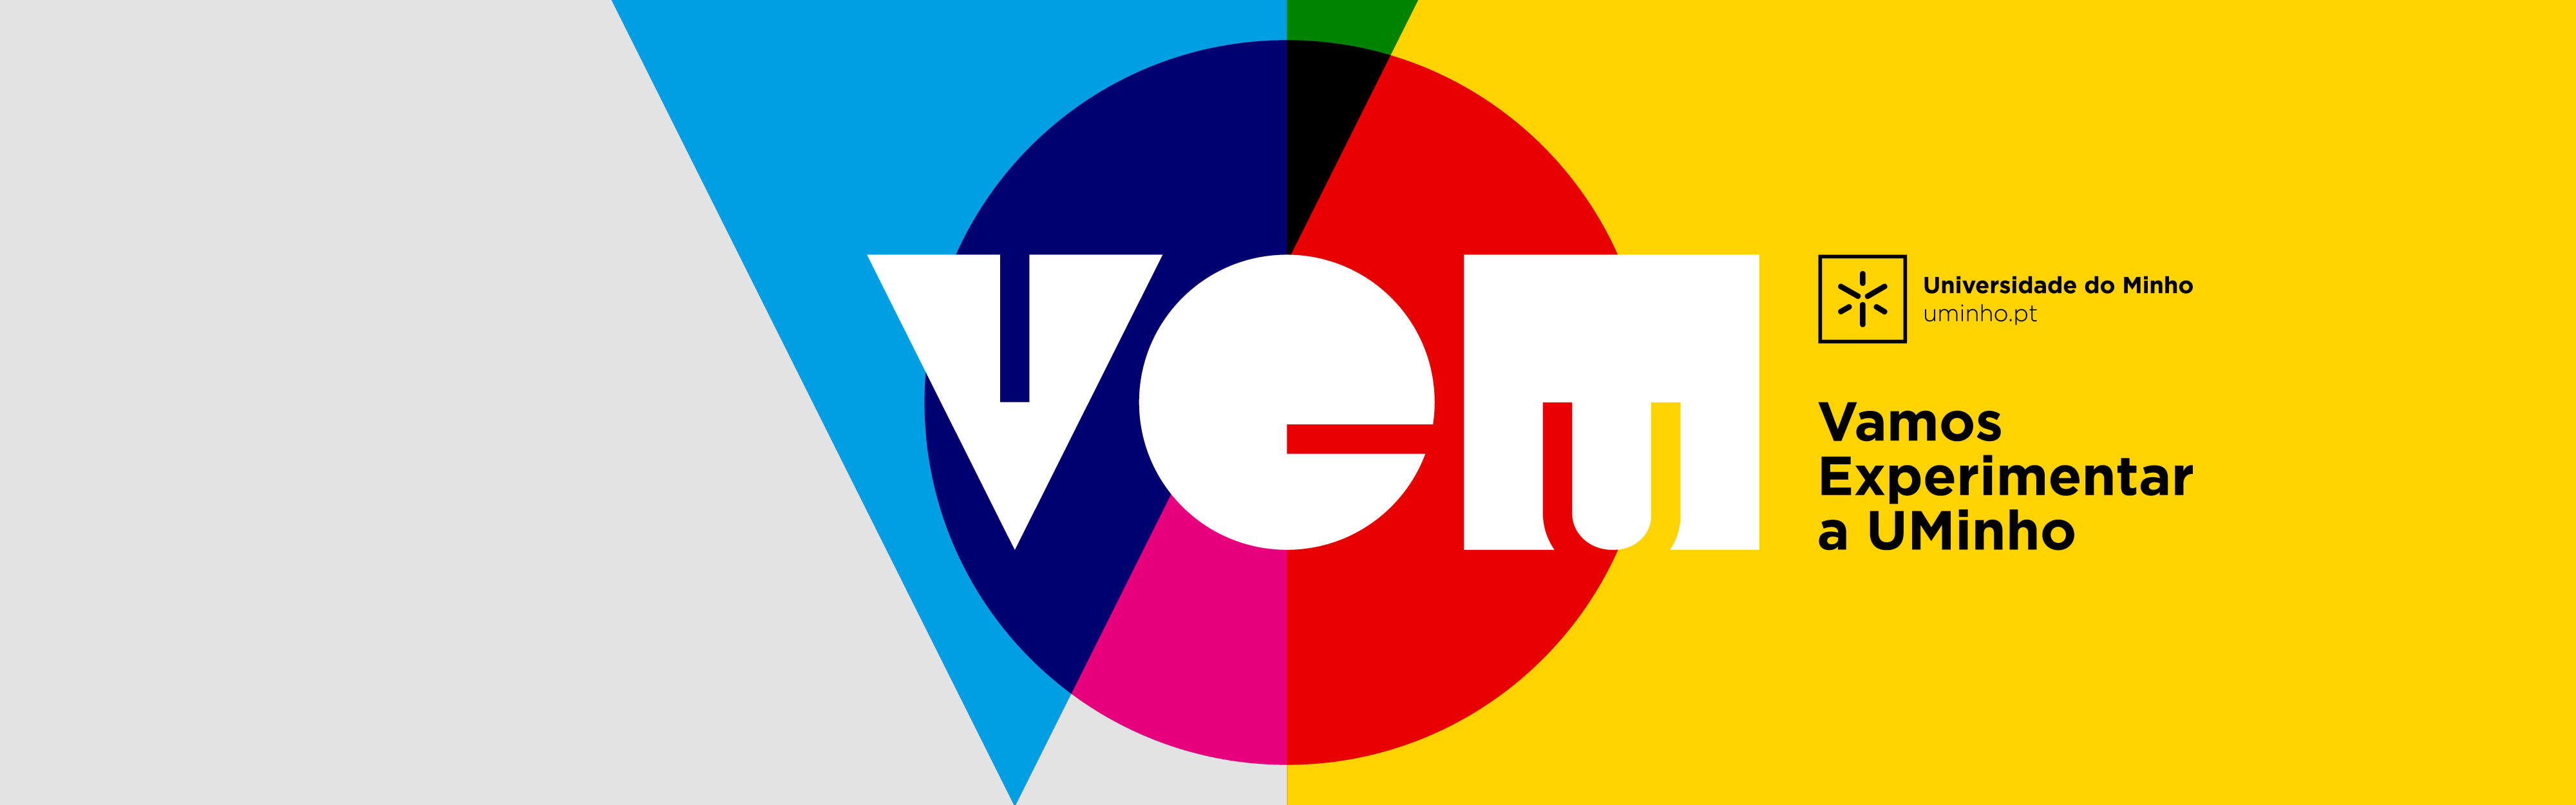 VEM-banner-VR2.jpg